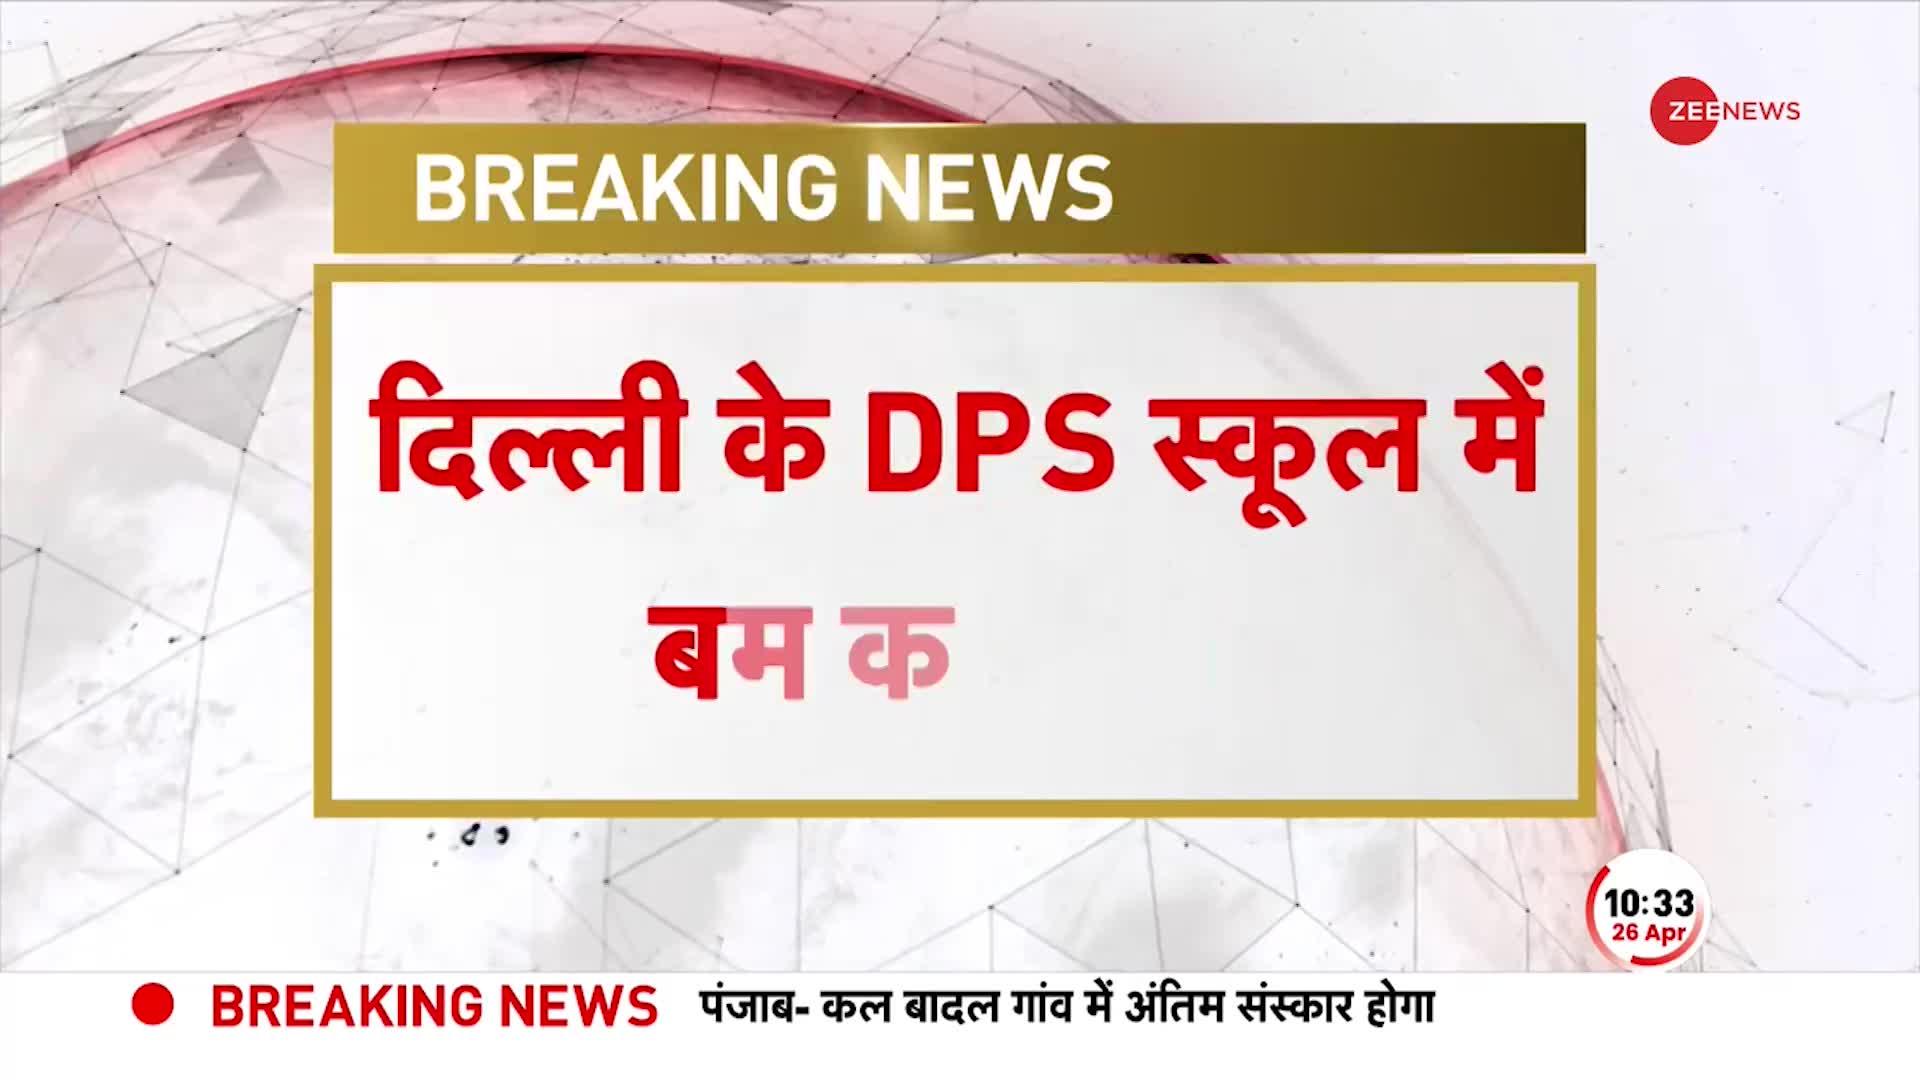 Breaking News: Delhi के DPS में बम की खबर से हड़कंप, पुलिस की टीम मौके पर मौजूद, जांच जारी